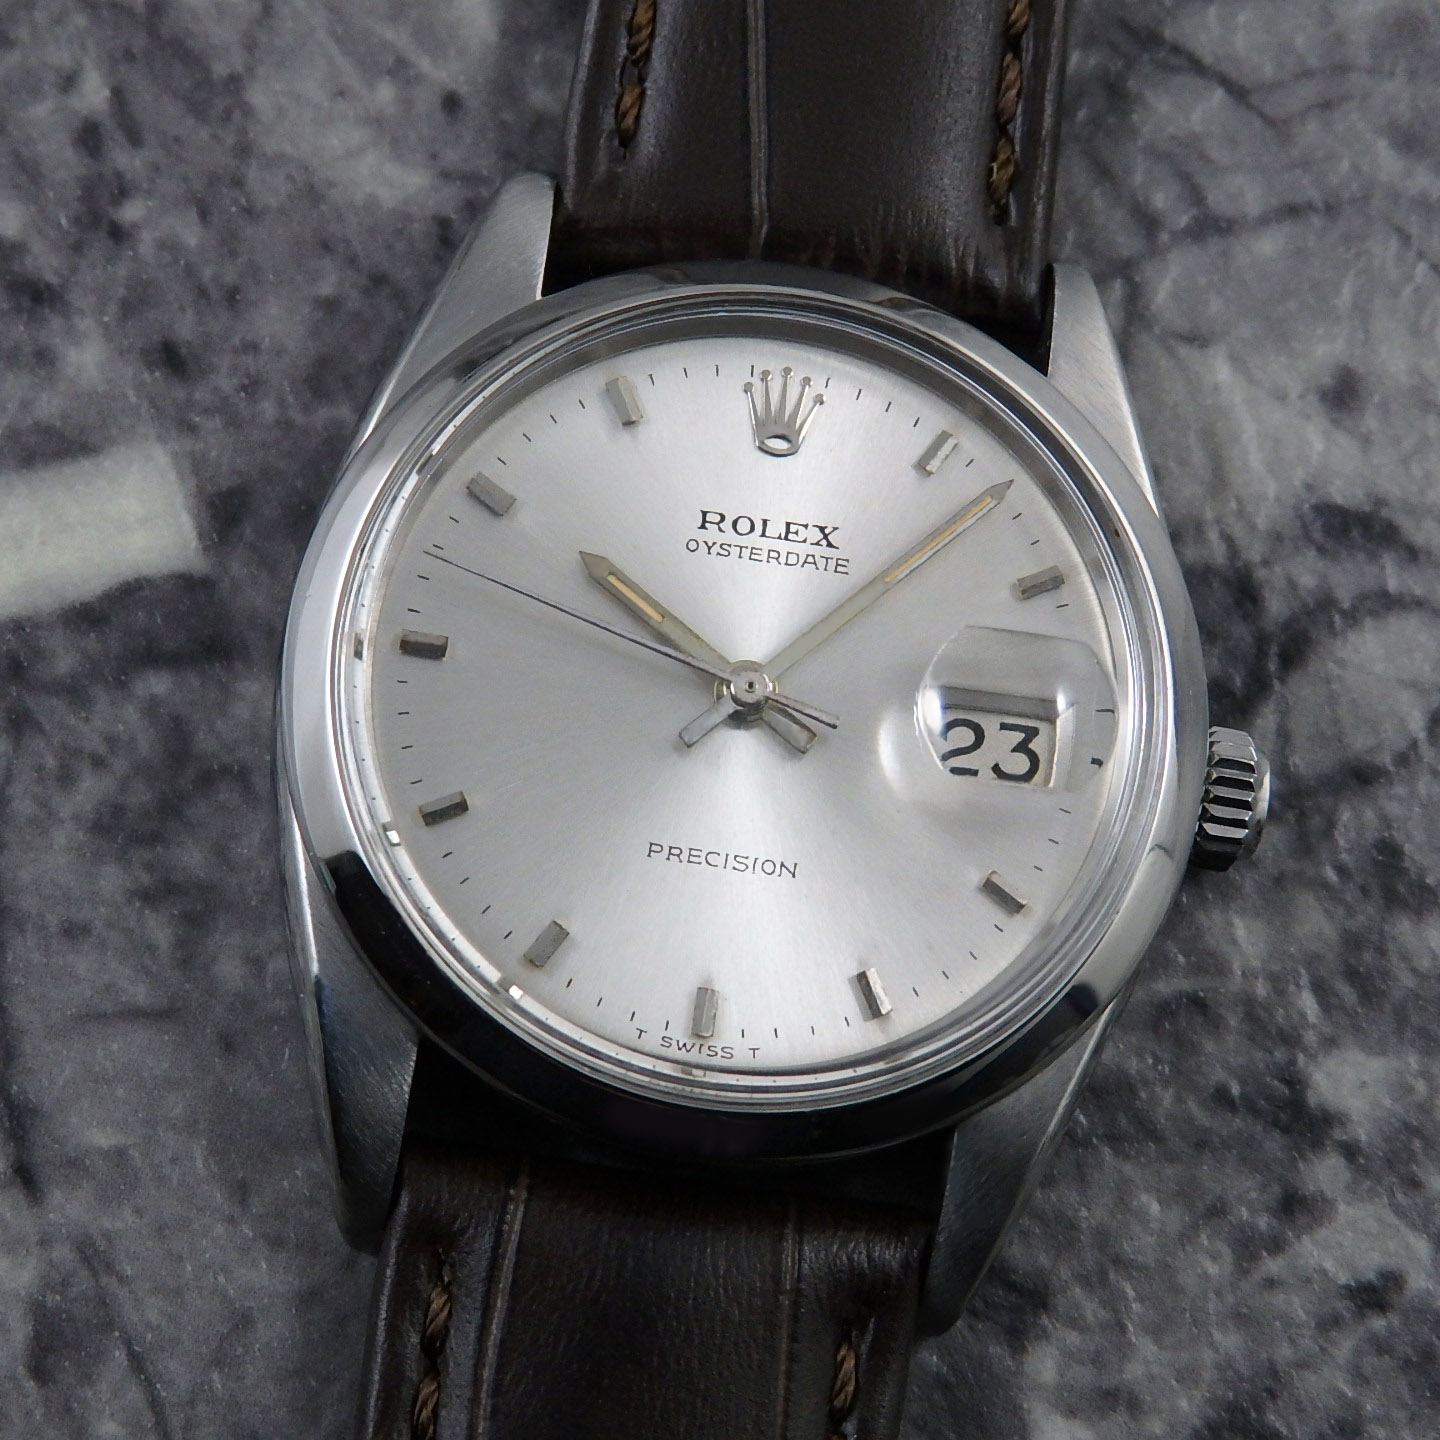 オイスター ロレックス オイスターデイト Ref.6694 1965年 アンティーク ヴィンテージウォッチ ROLEX 腕時計